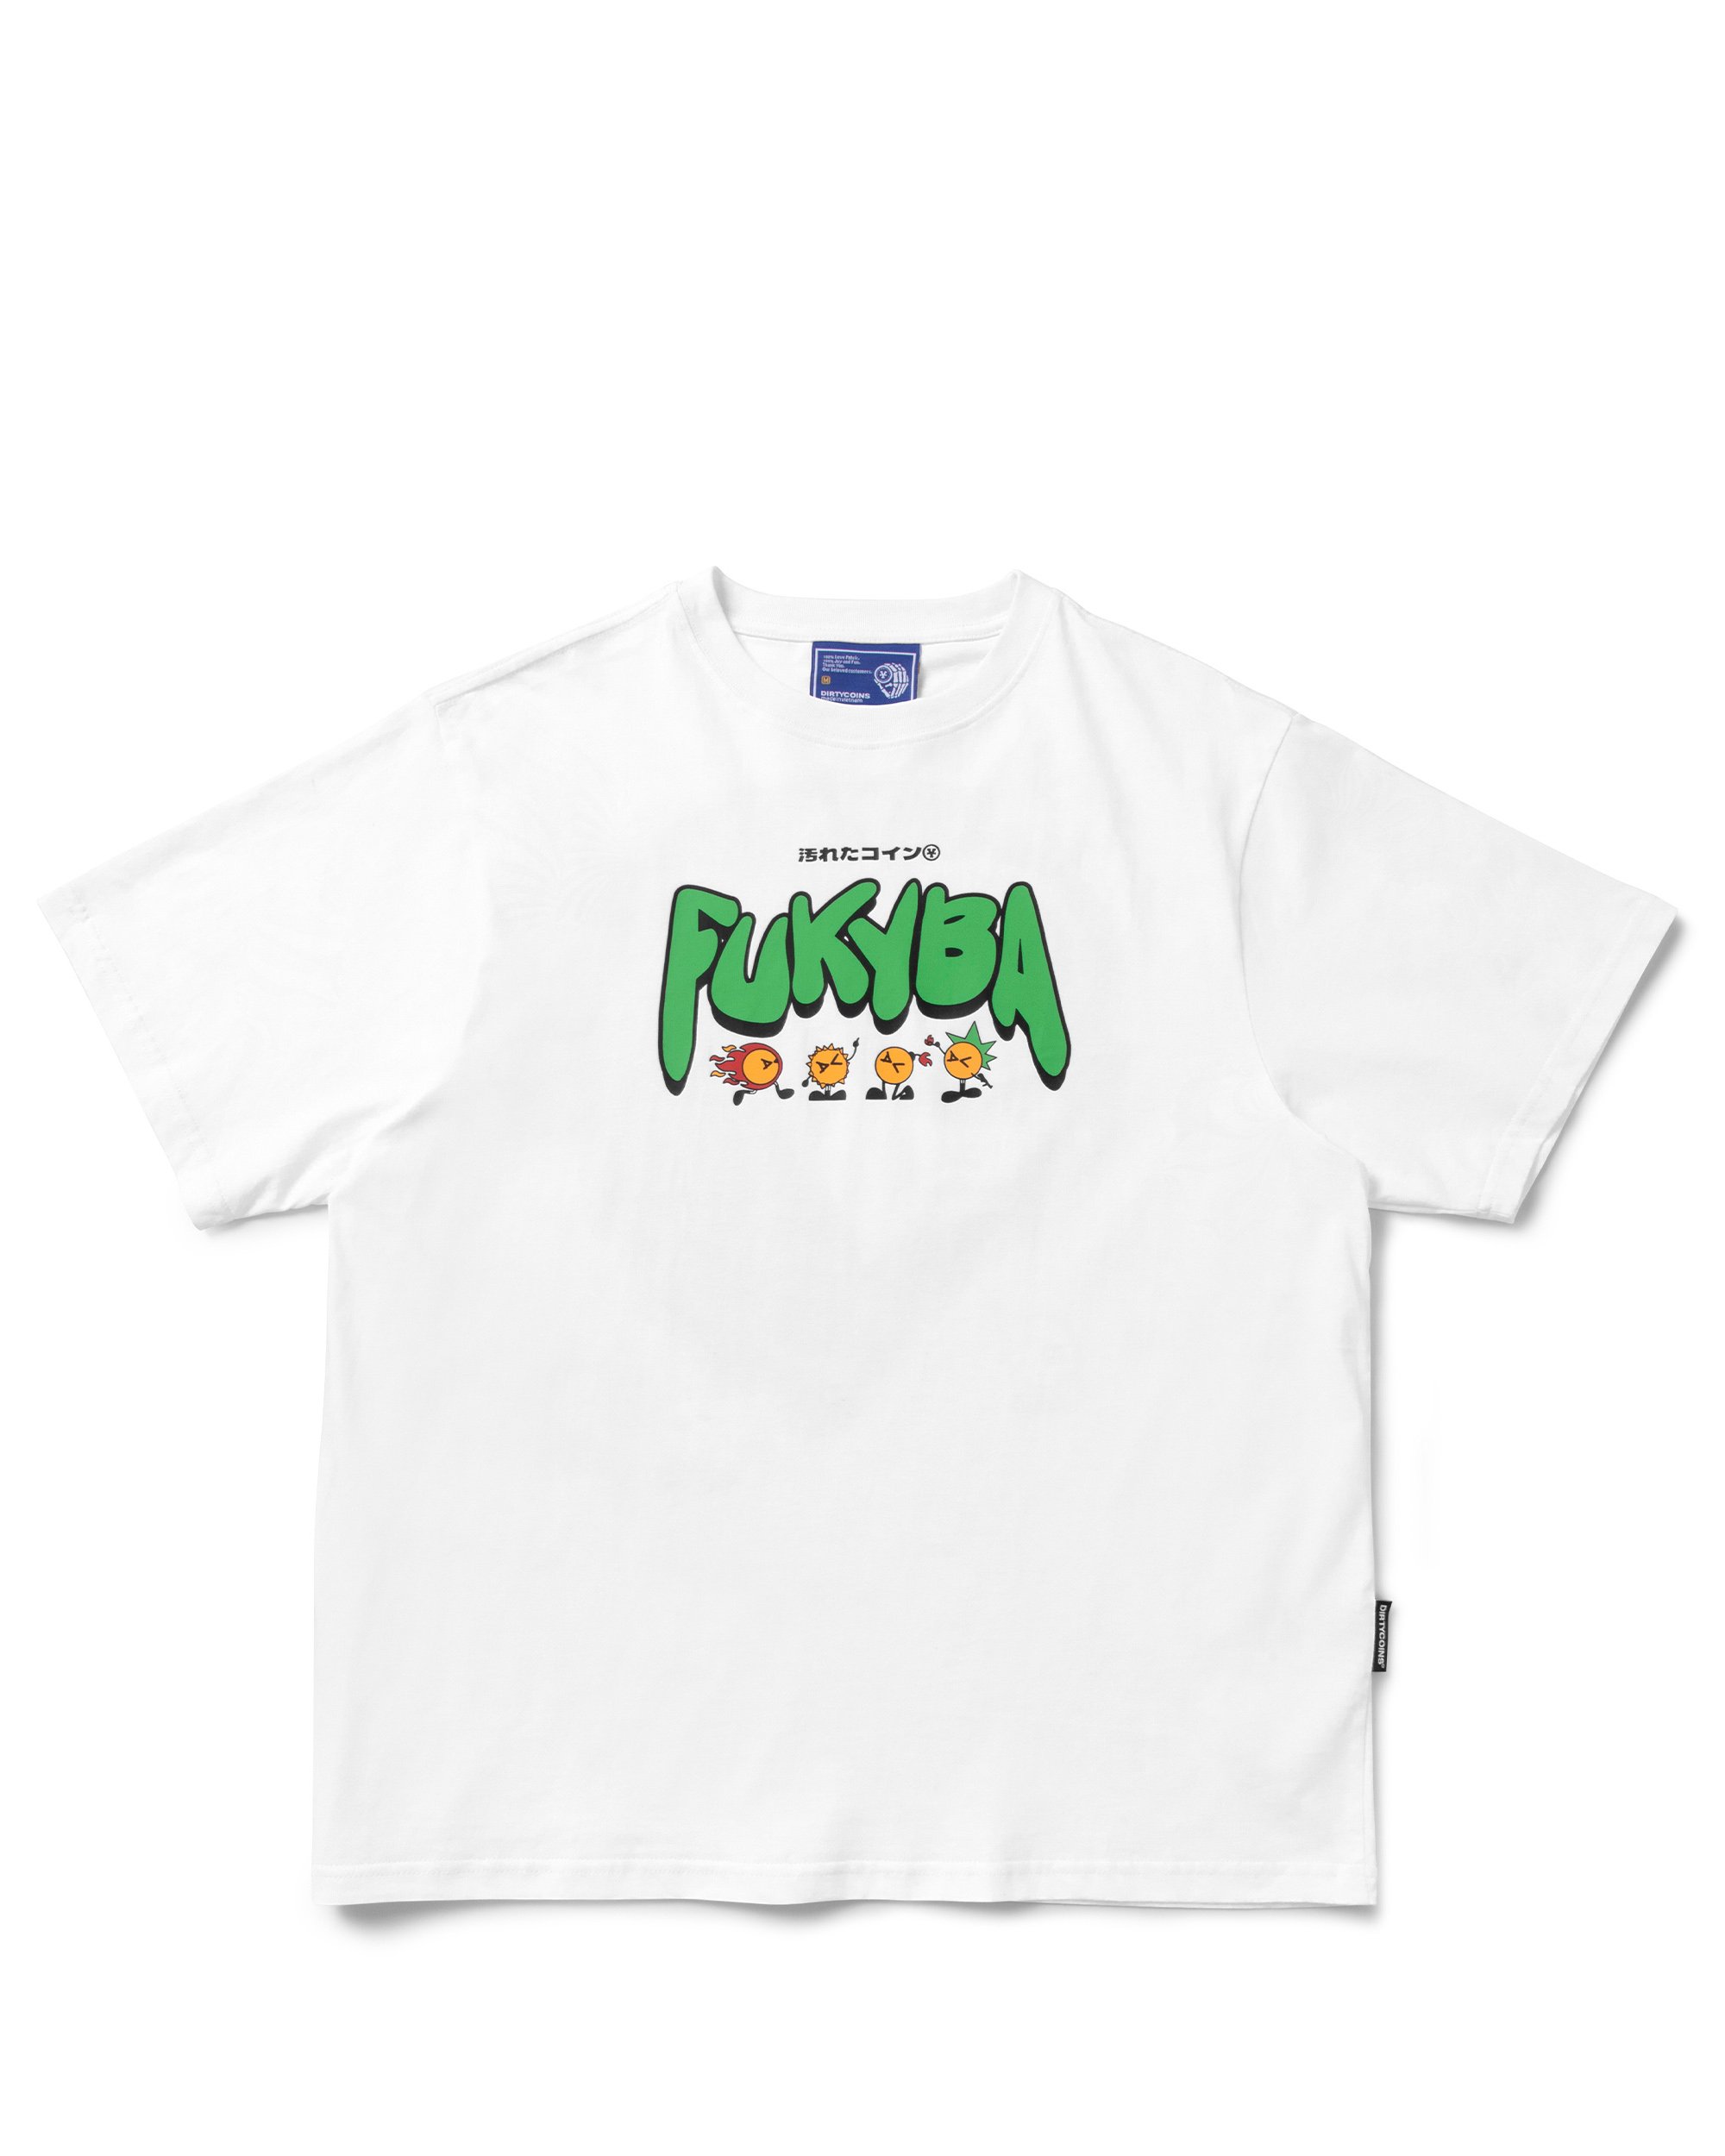 DirtyCoins Fukyba Gang T-shirt - White